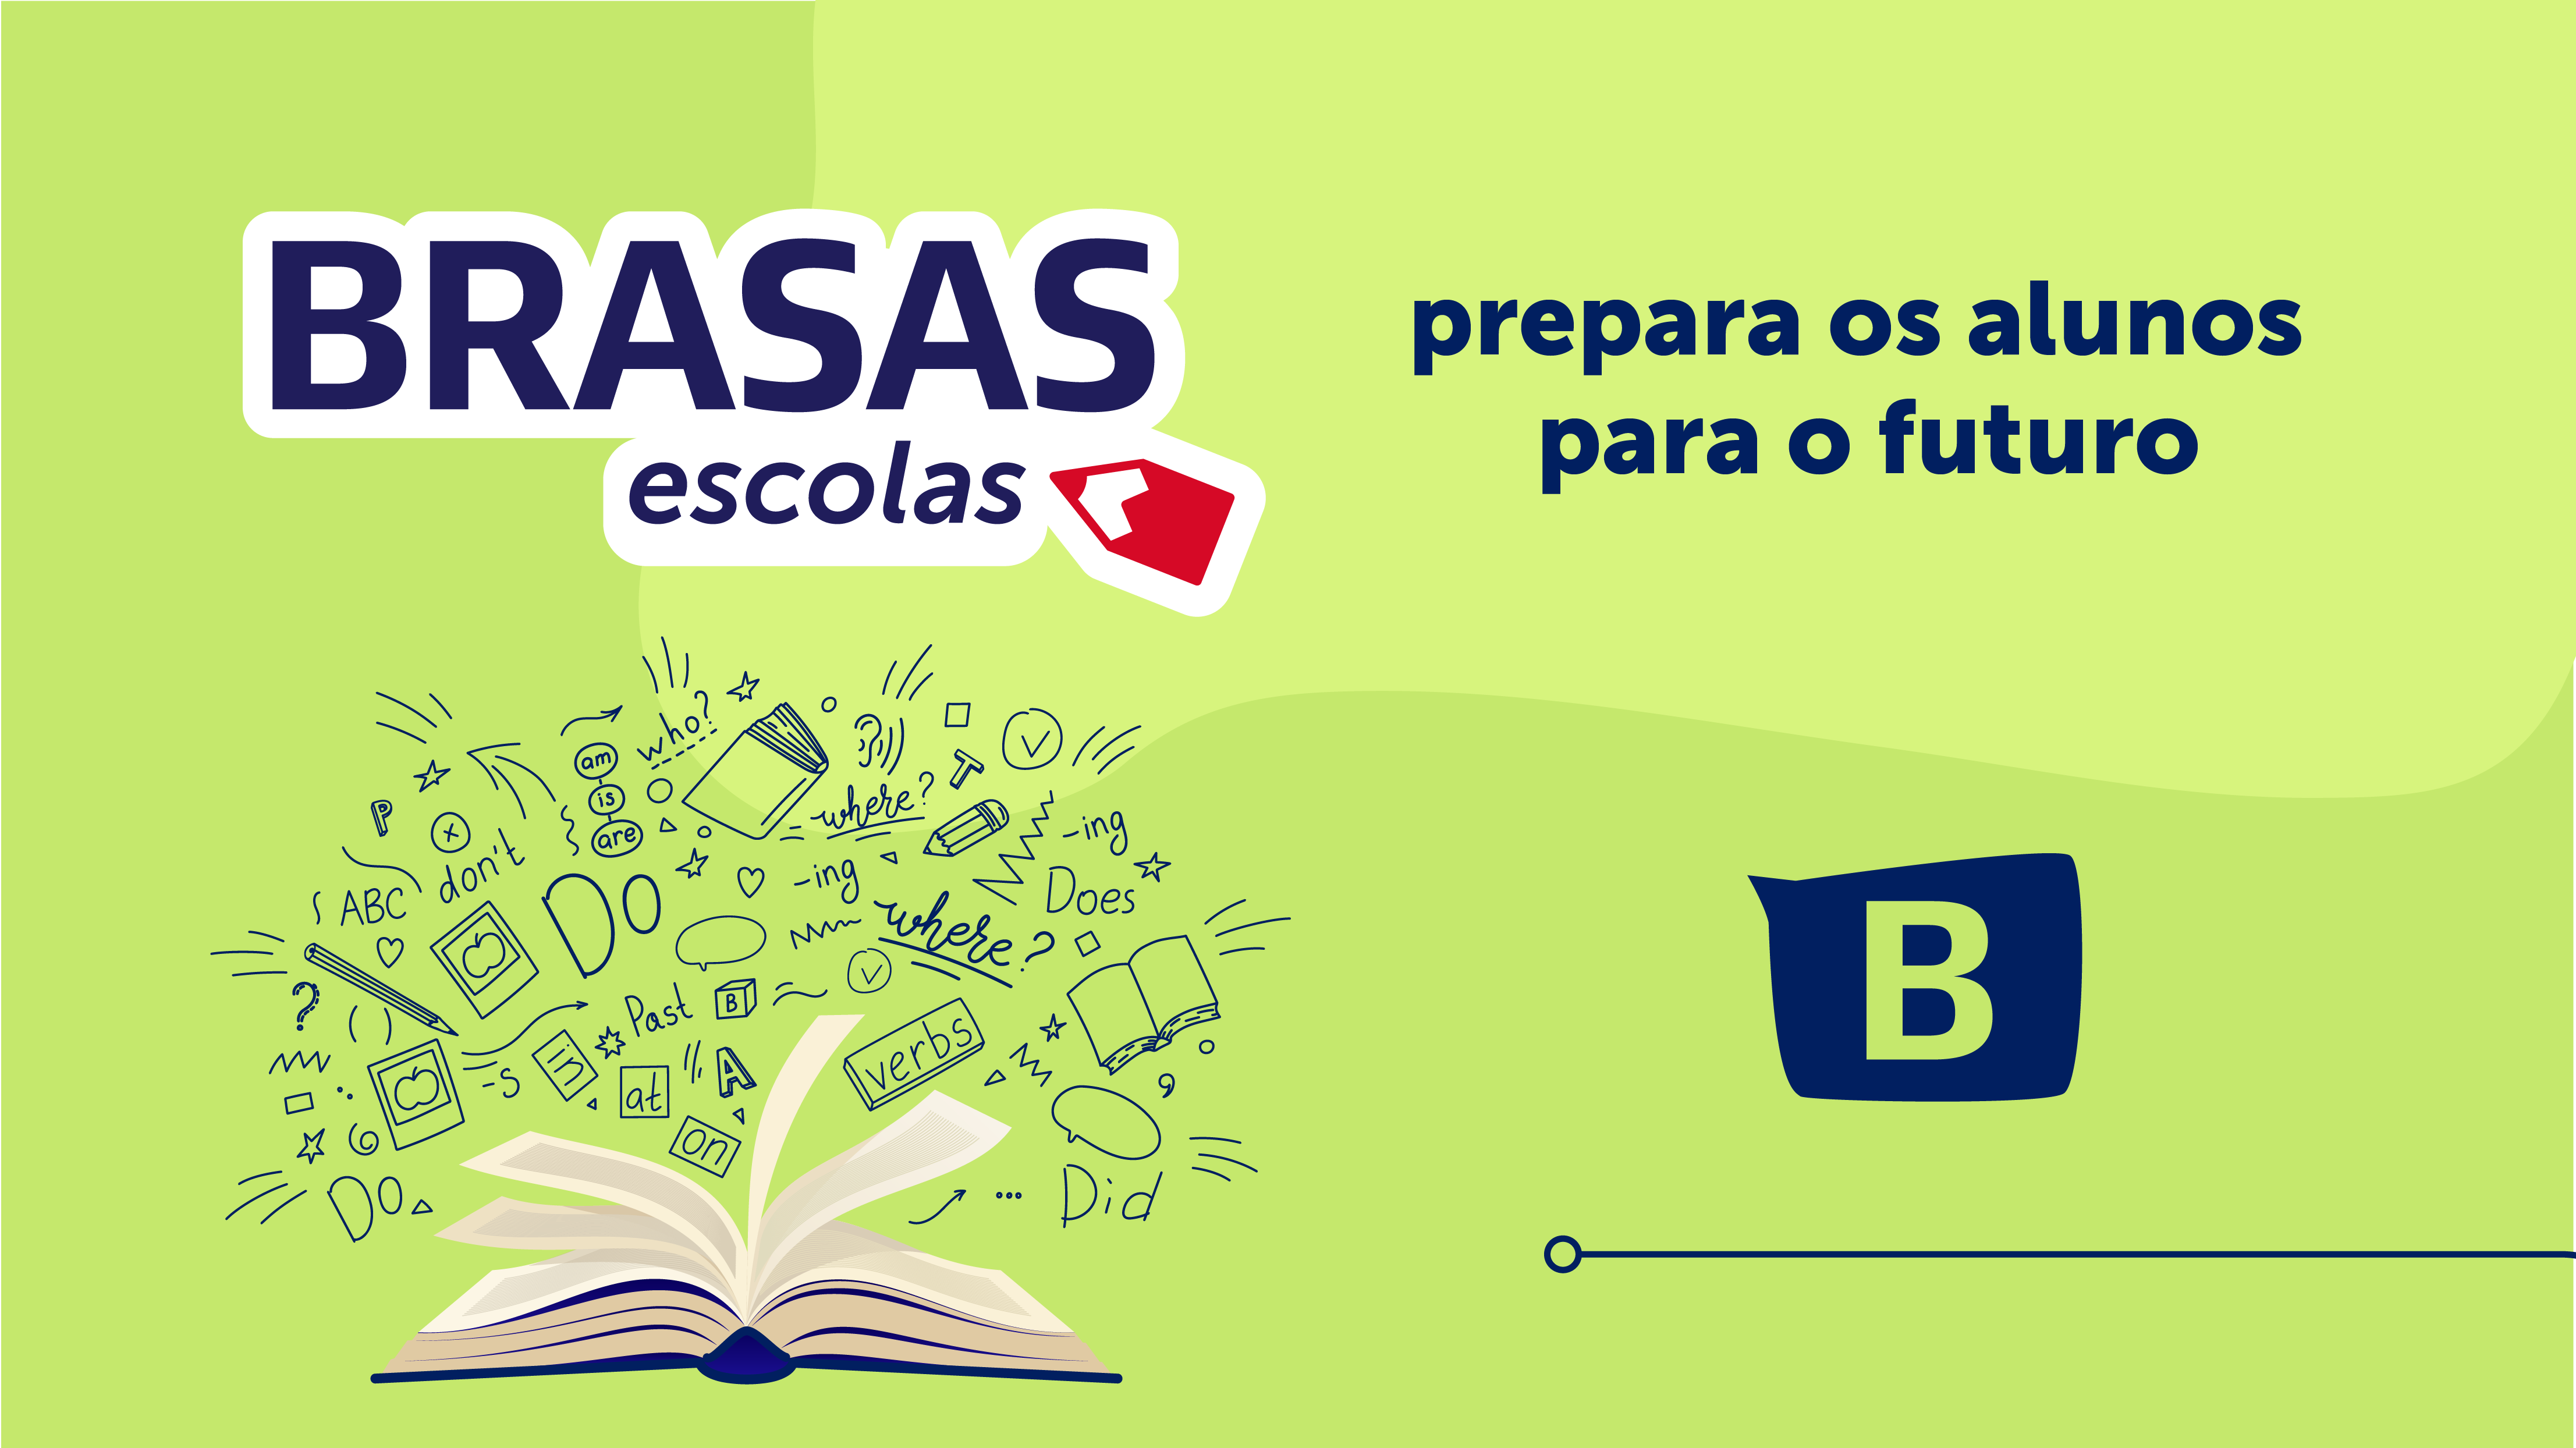 O BRASAS Escolas prepara os alunos para o futuro 3